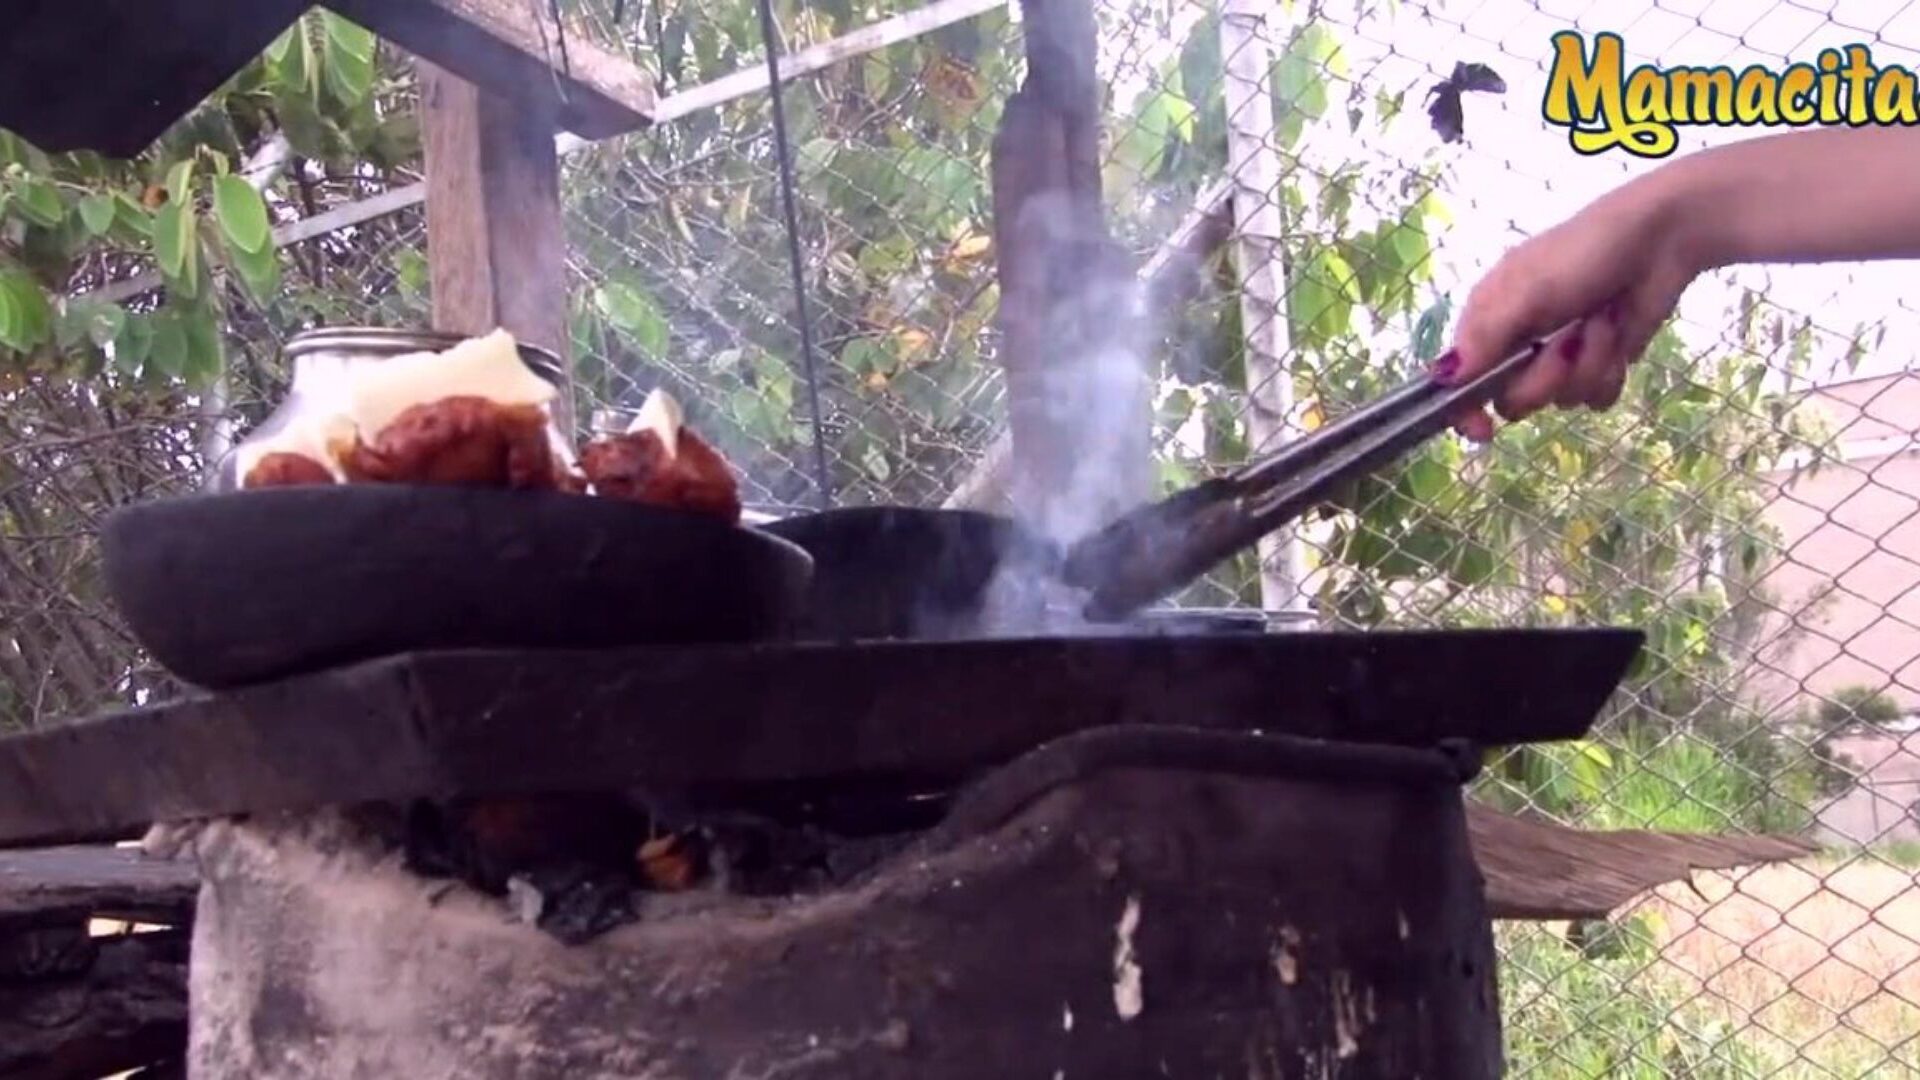 mamacitaz-哥伦比亚超级热卖肉的人渴望一种不同类型的肉